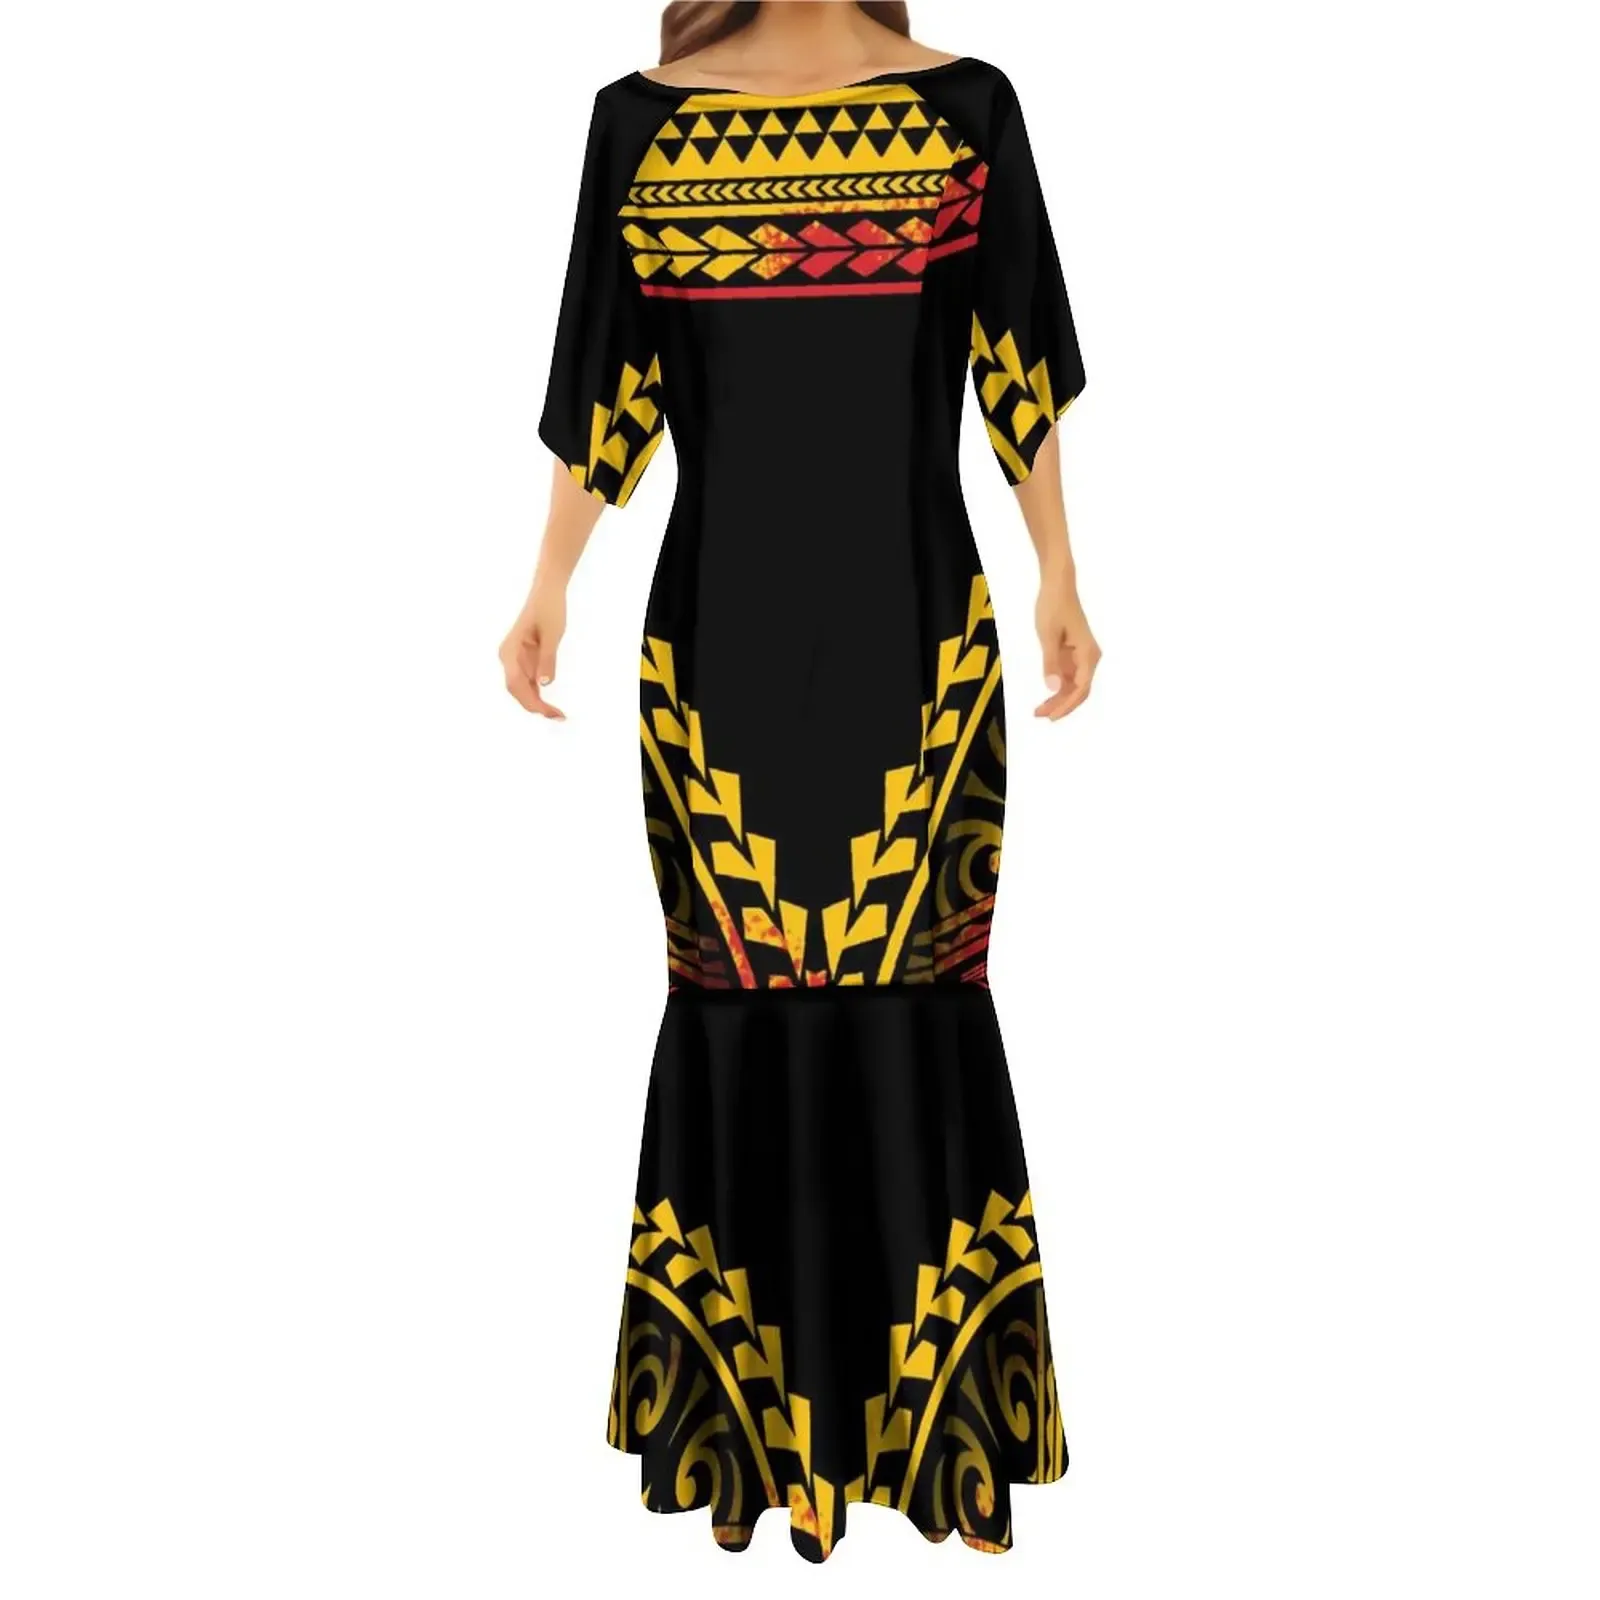 OEM оптовая продажа Самоанское пулетаси хорошее качество высококлассные низкие цены островное платье полинезийская уличная одежда эластичные платья русалки